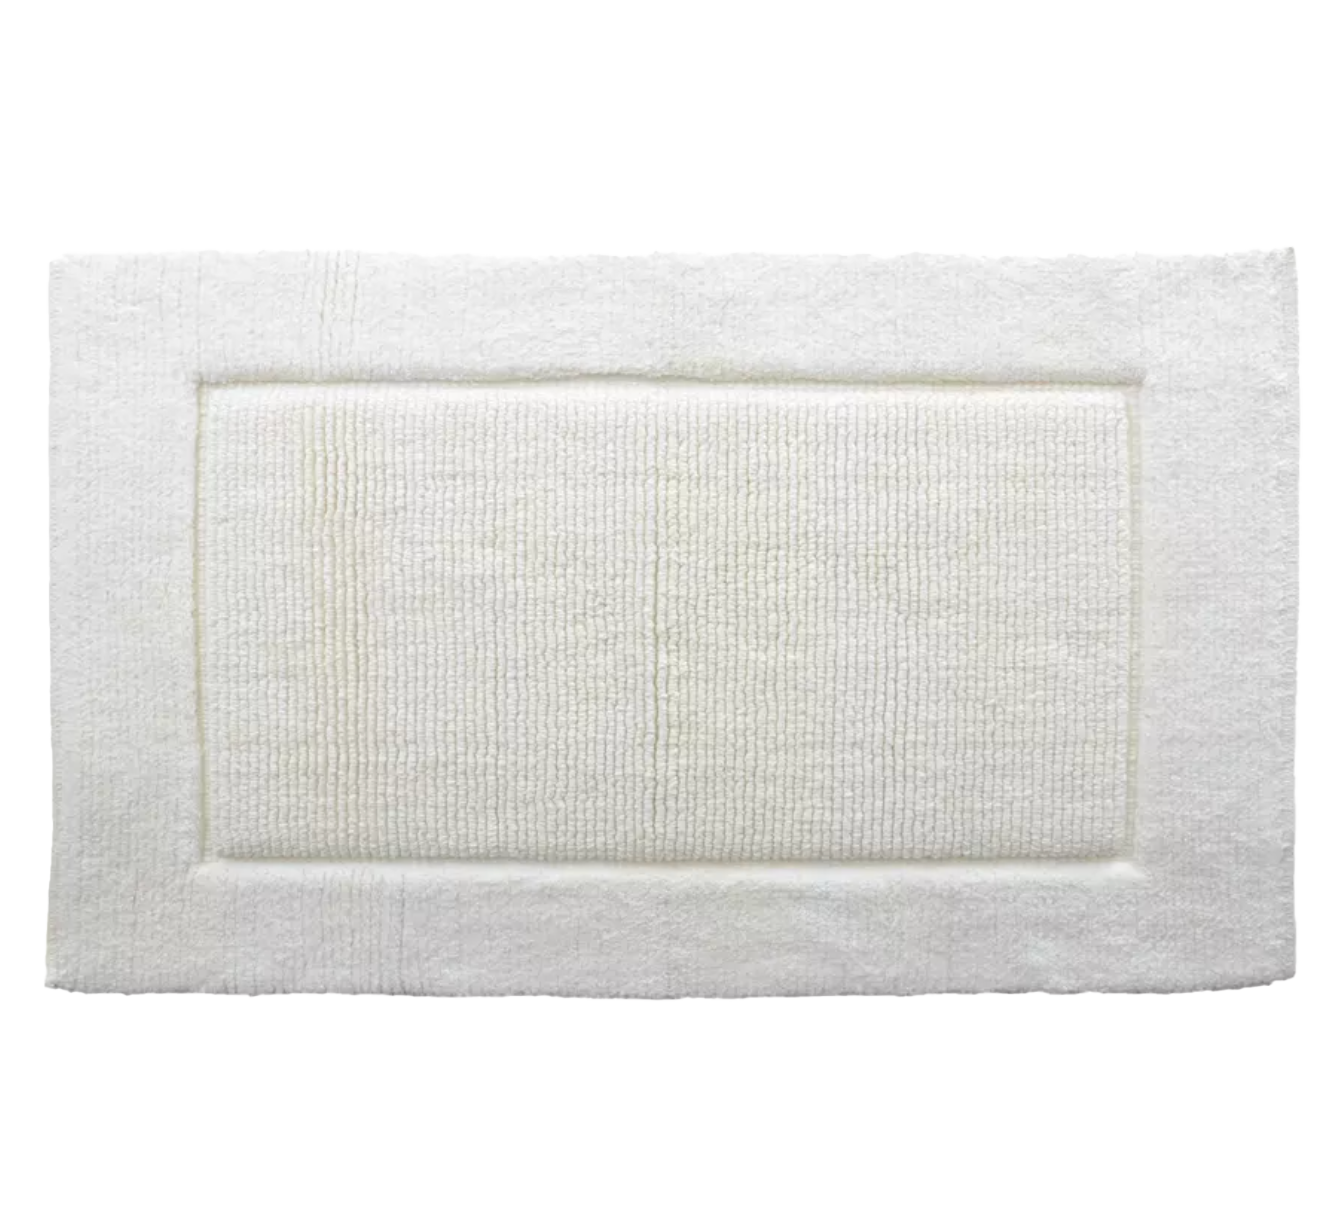 Moda Prima Super-Soft Cotton Bath Mat - 21" x 34" – Cream